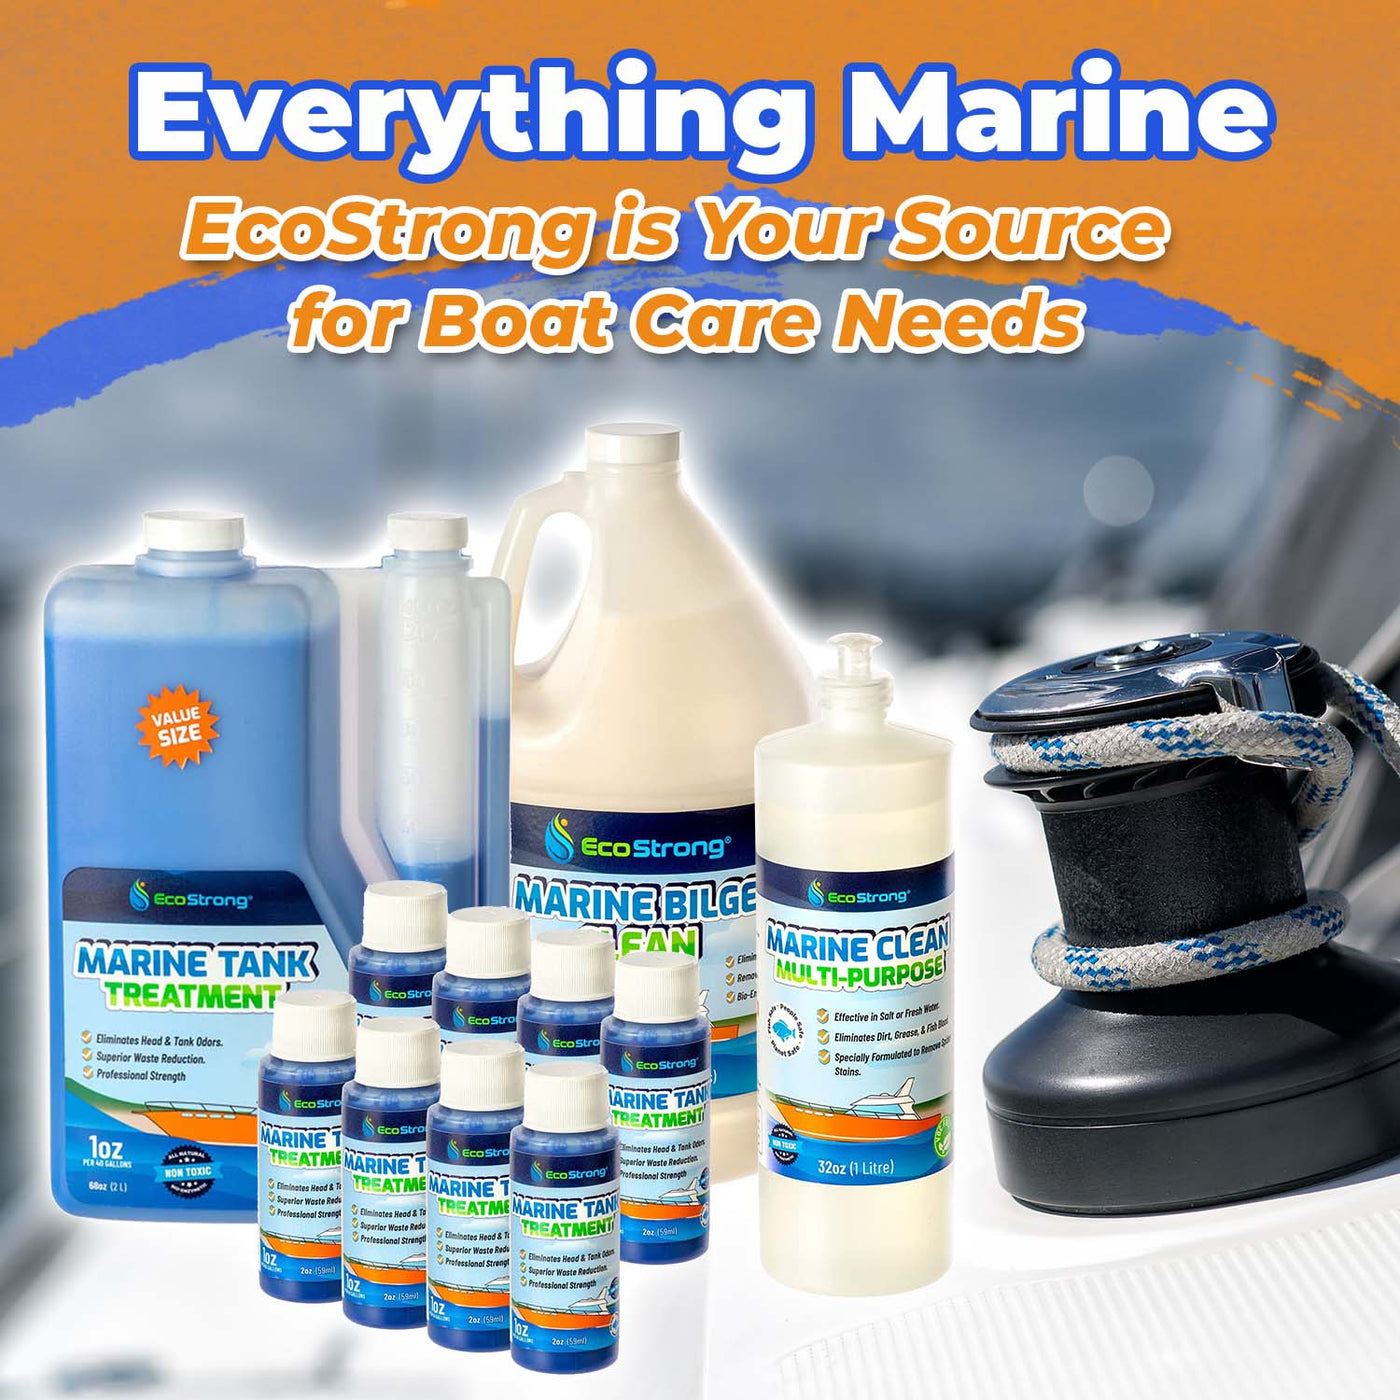 EcoStrong Marine Clean Multi-Purpose 1 gallon #size_1-gallon-jug